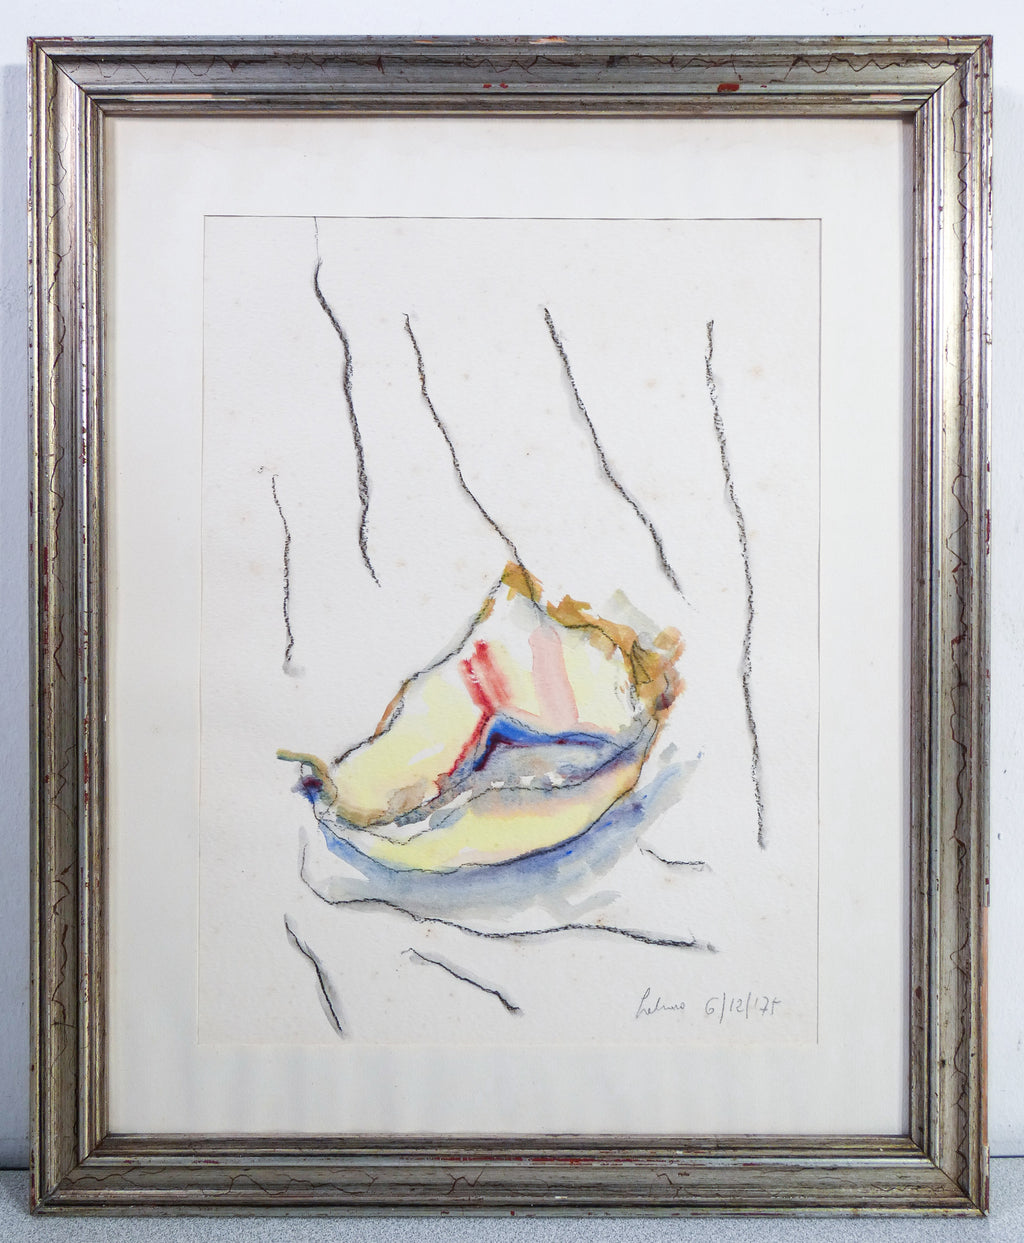 dipinto firmato albino galvano quadro acquarello 1975 astratto contemporaneo